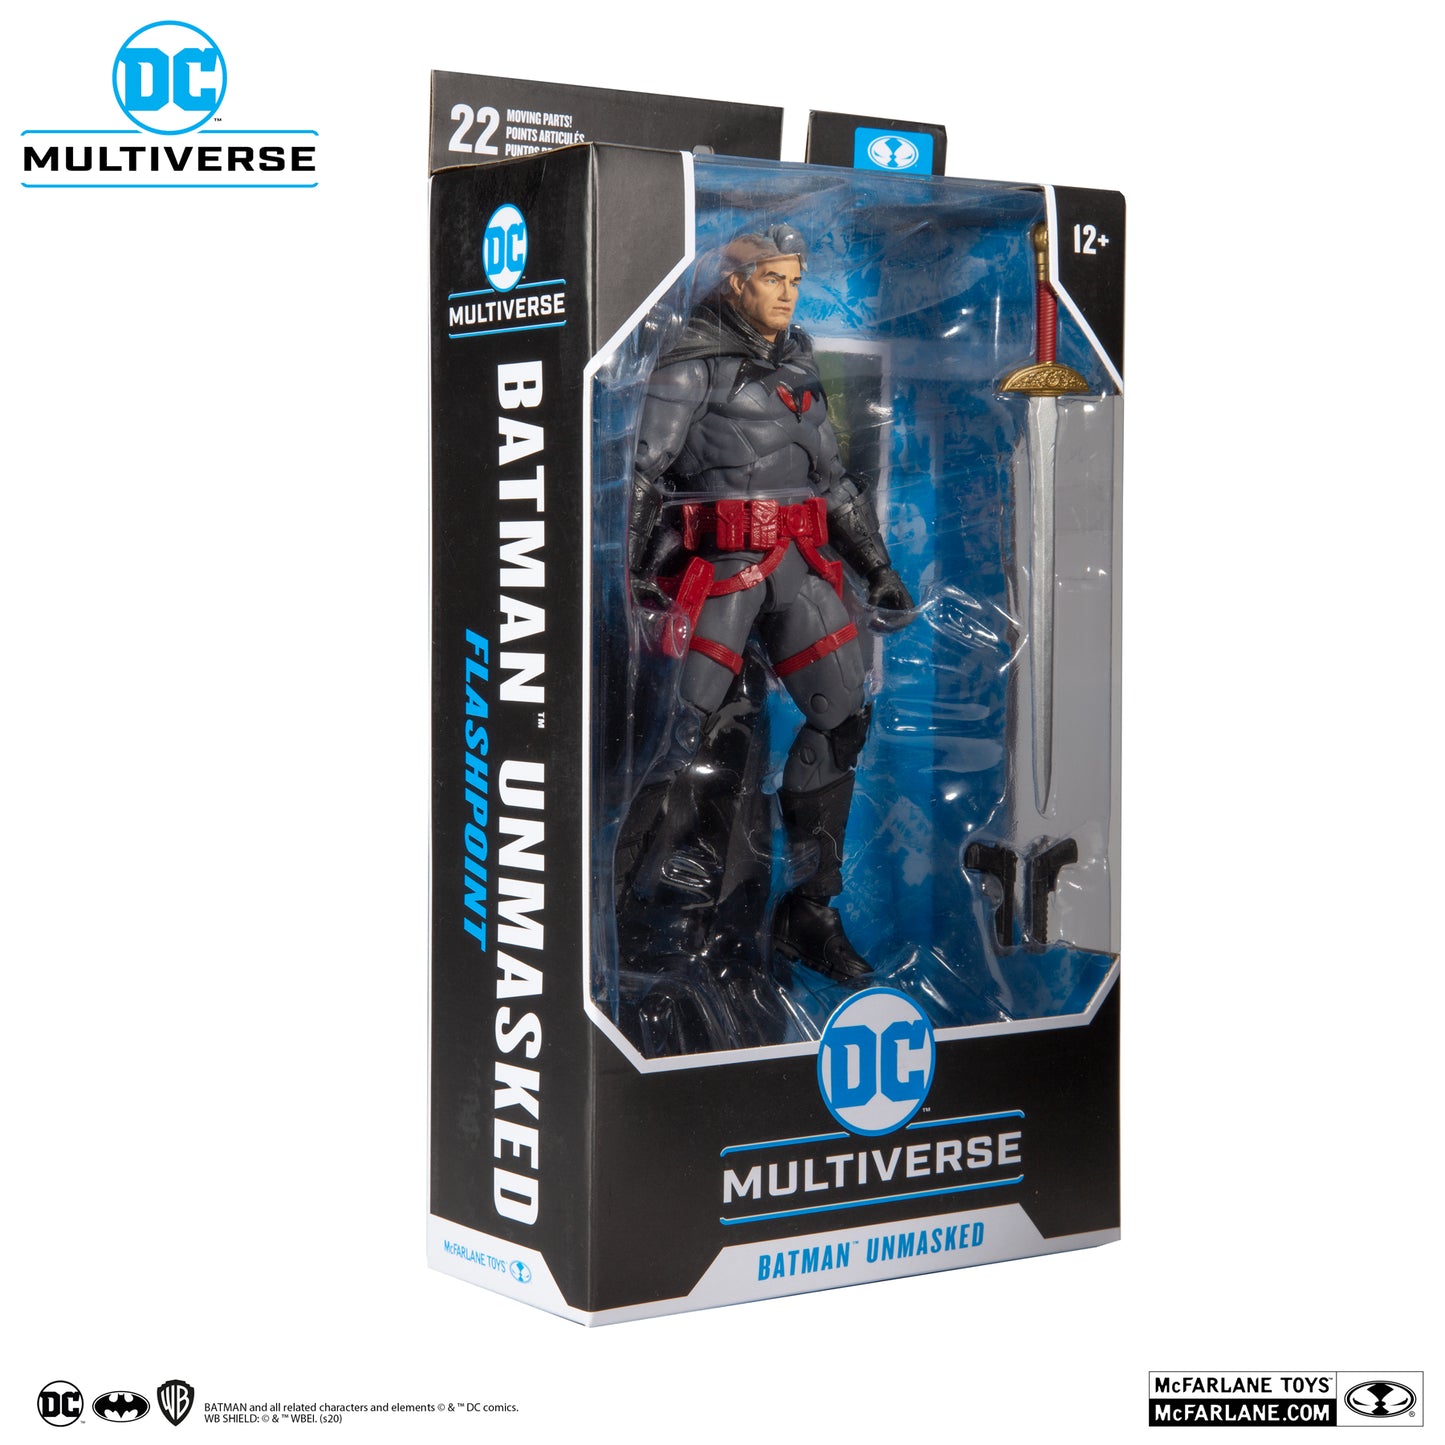 [BUNDLE] McFarlane Toys DC Multiverse Rebirth Batman & Flashpoint Batman Thomas Wayne Unmasked